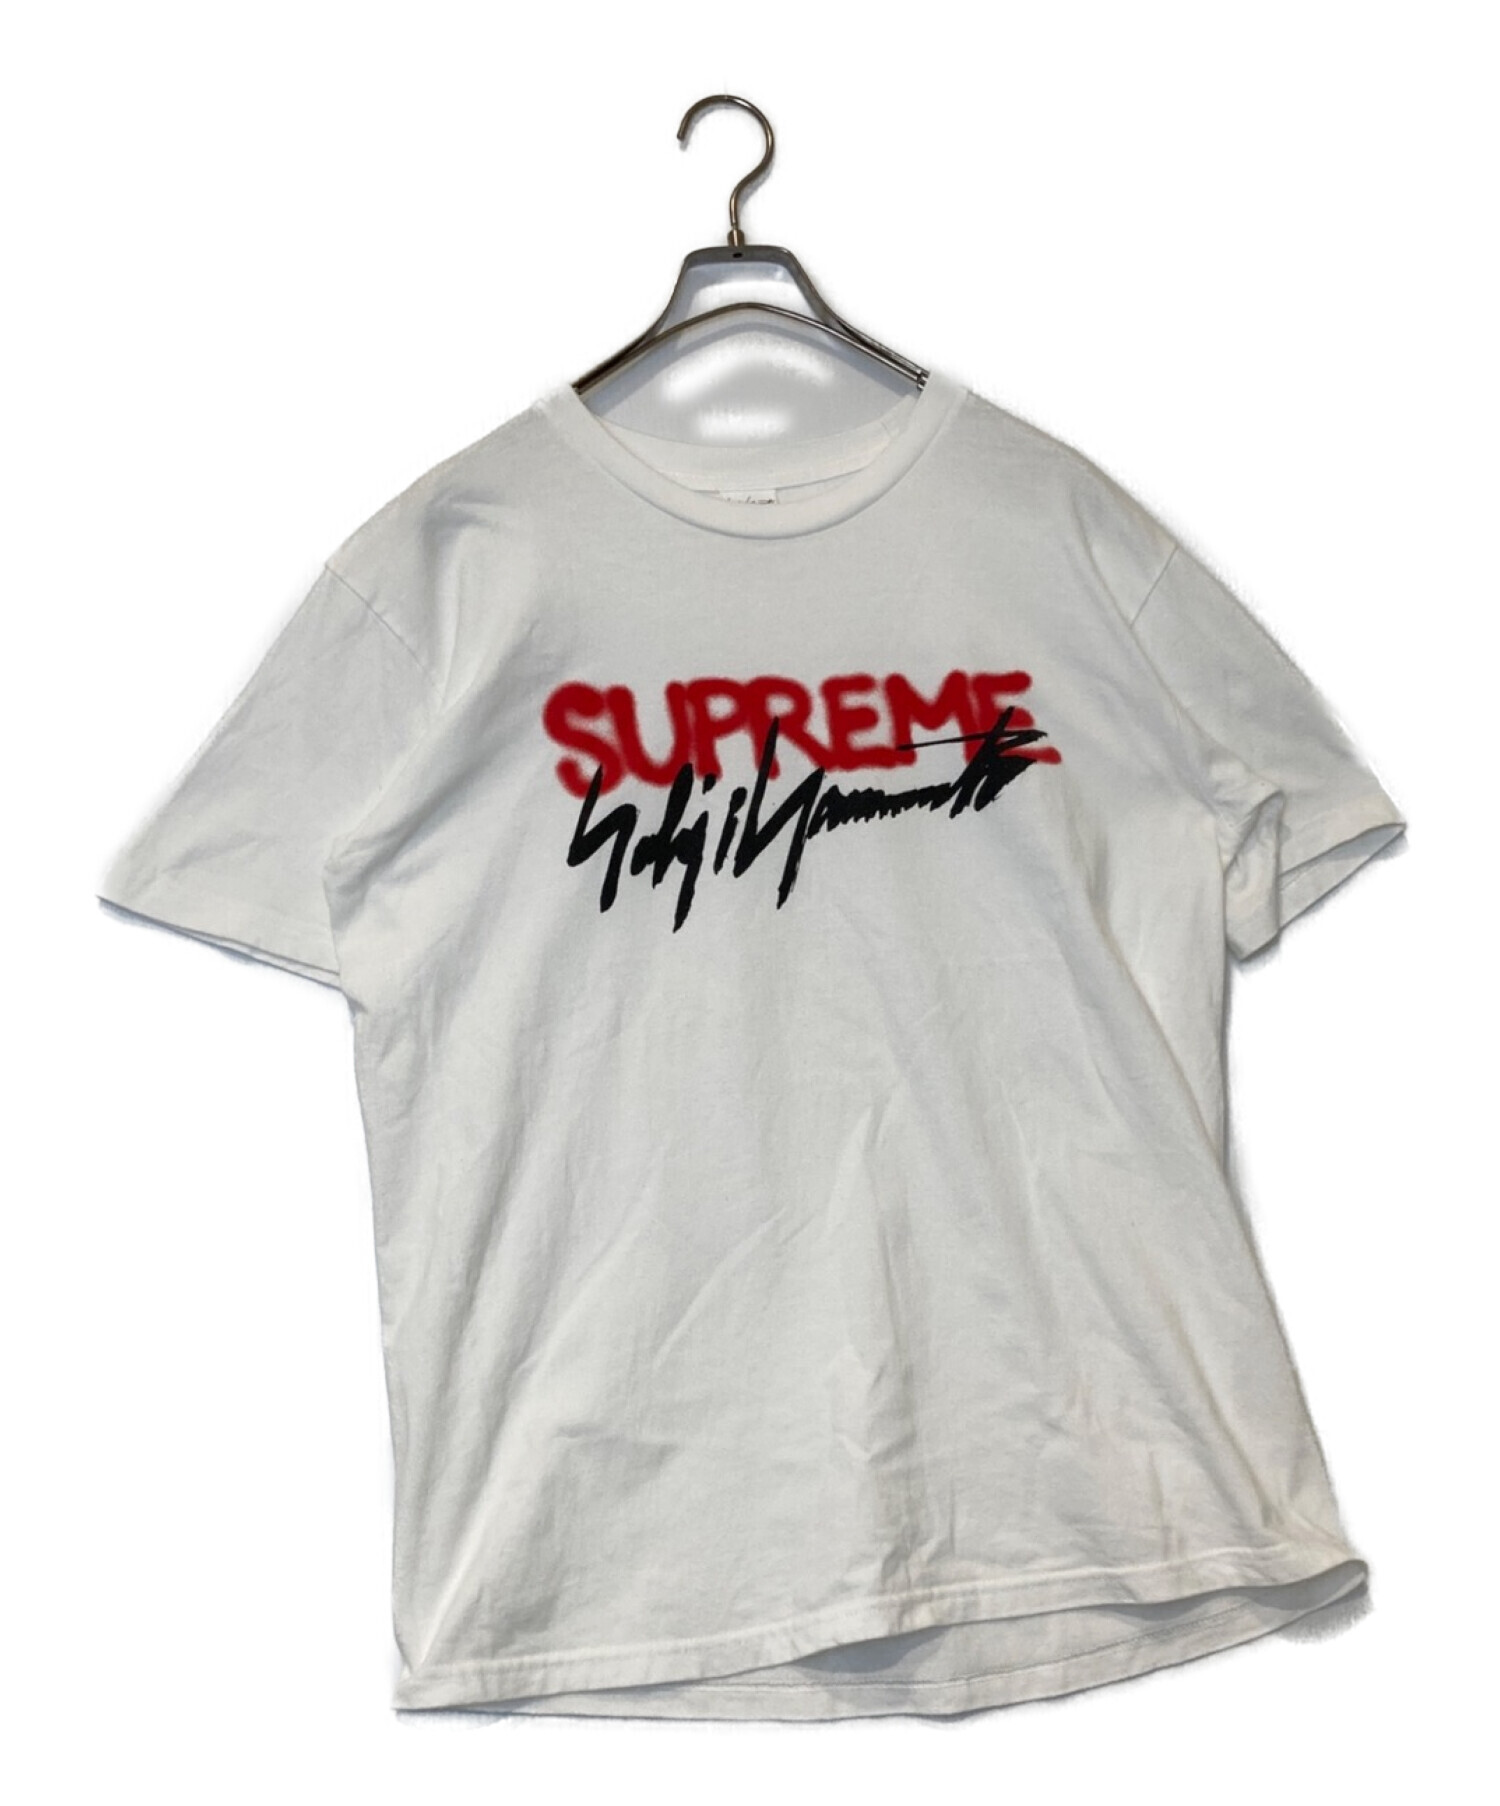 Supreme Yohji Yamamoto Logo Tee シュプリーム - Tシャツ/カットソー ...